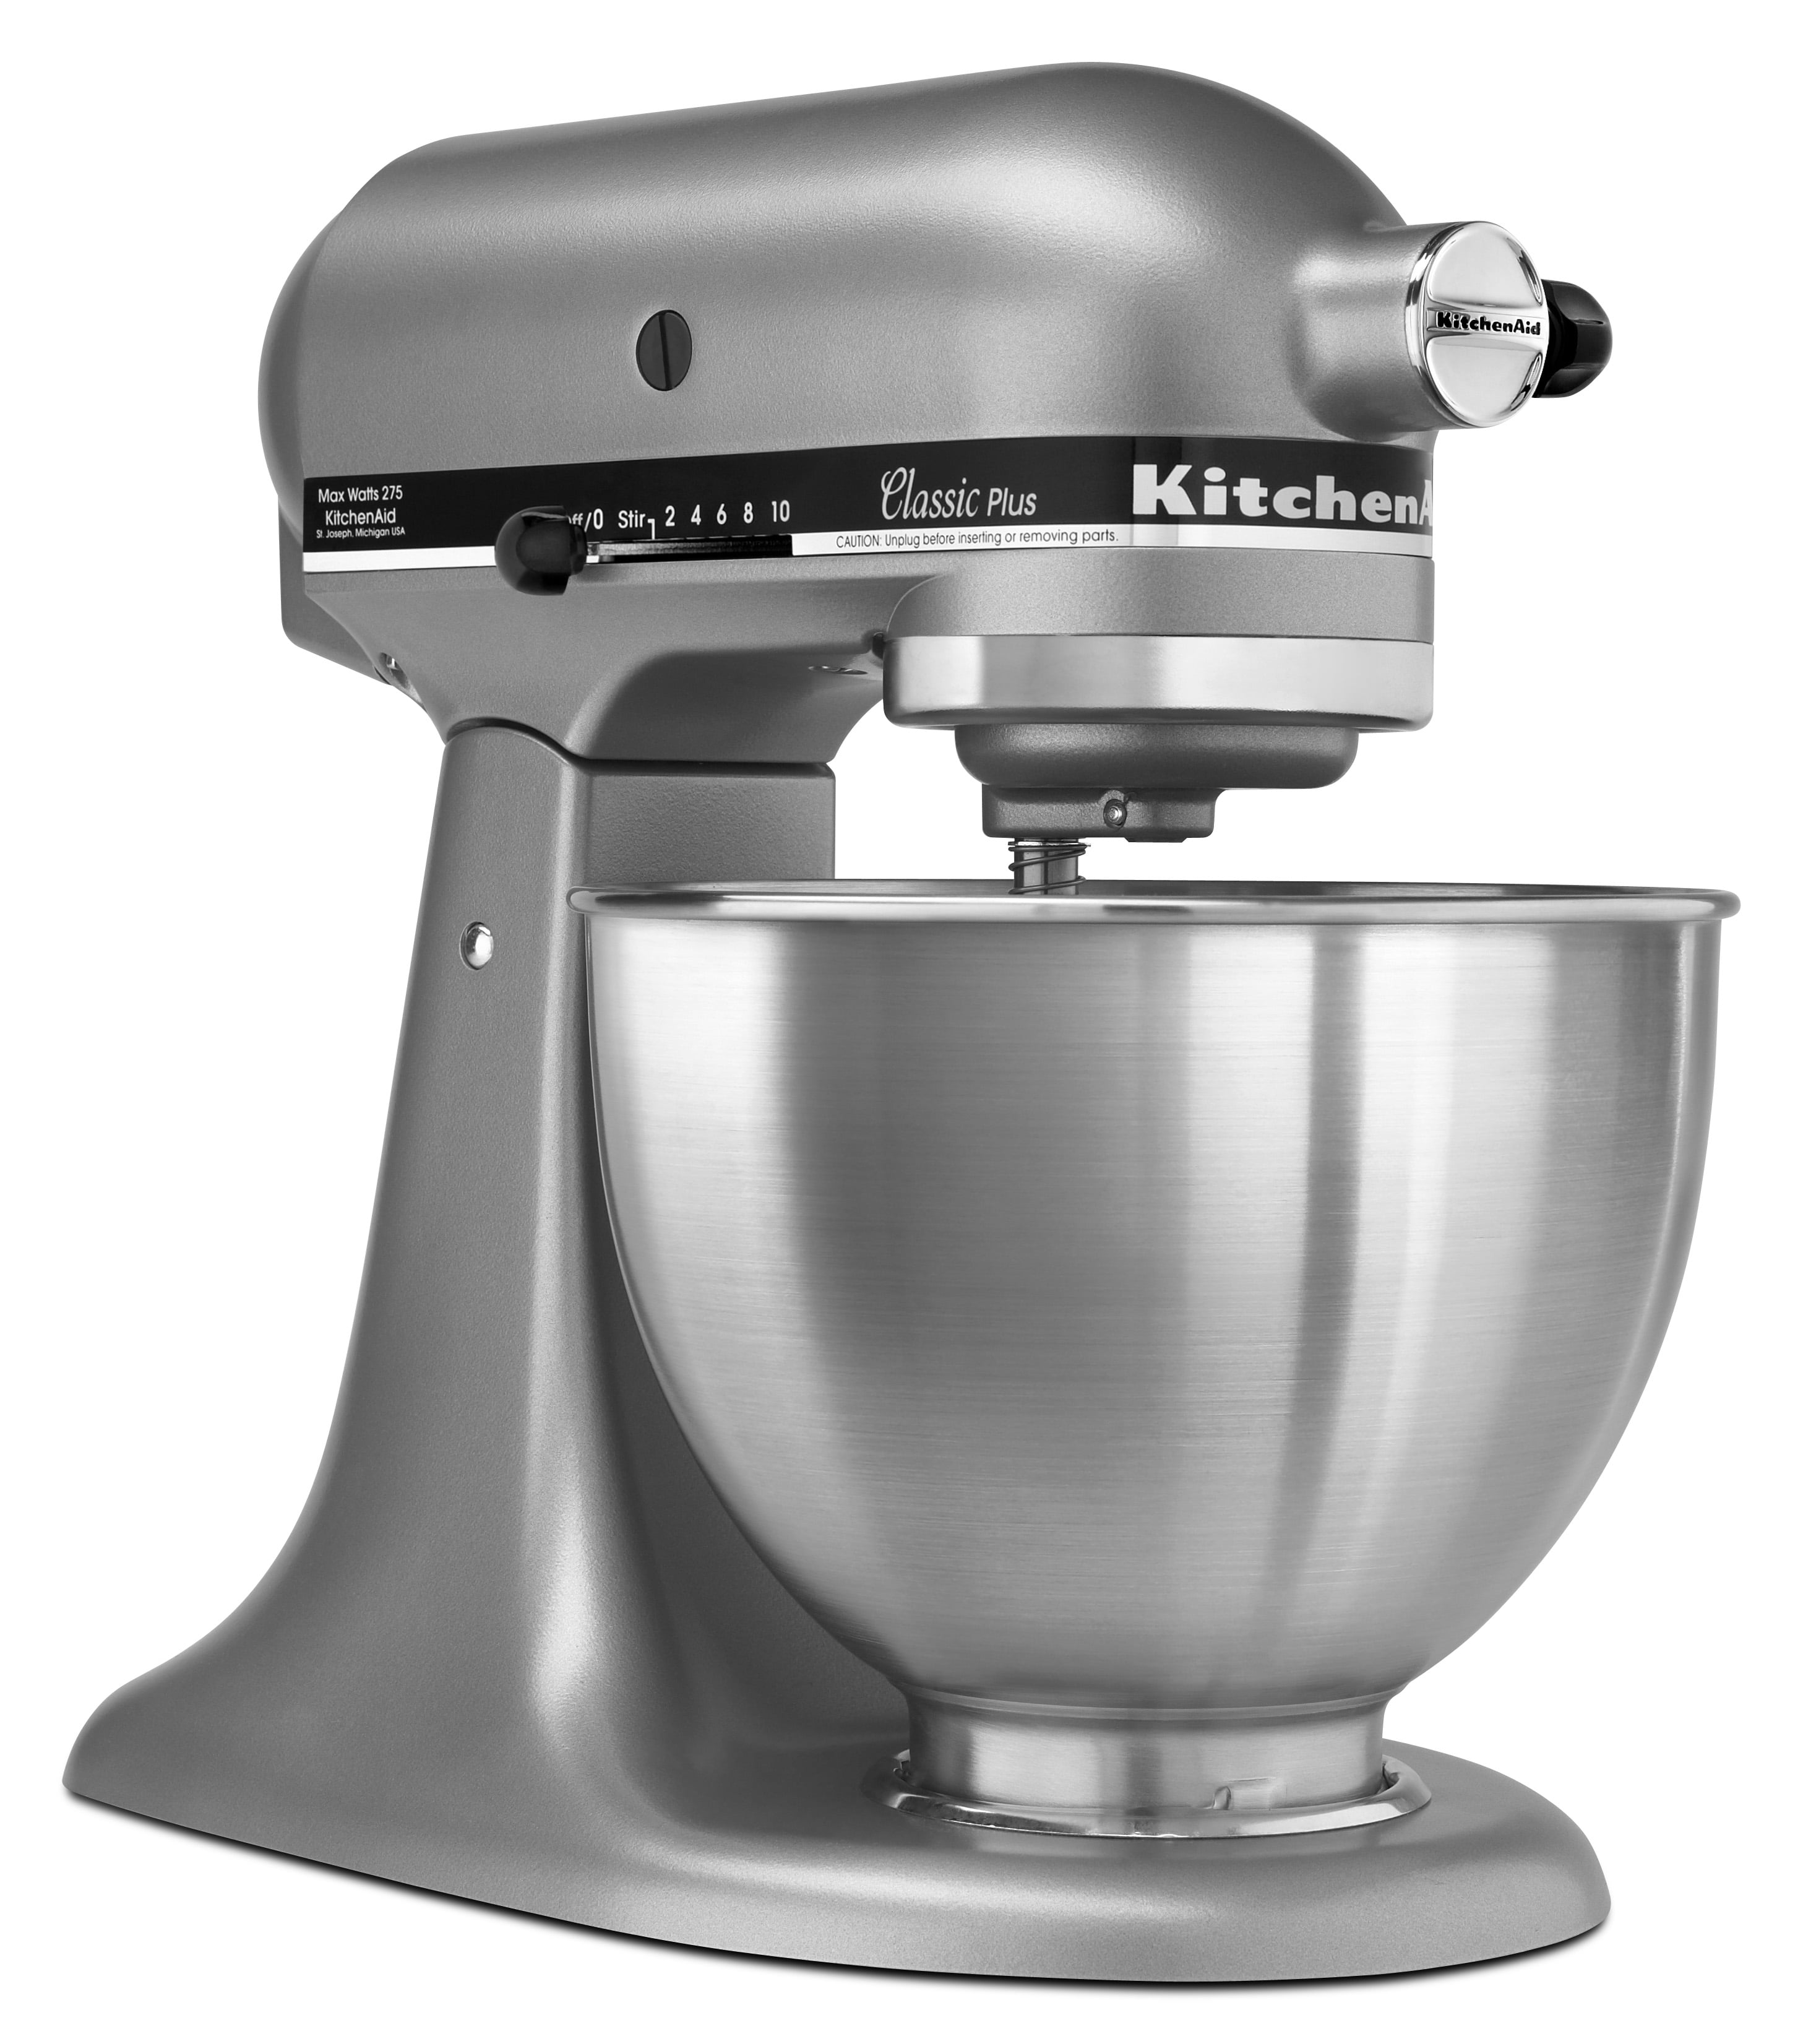 KitchenAid KSM75WH Classic Plus Tilt-Head Stand Mixer - White, 4.5 qt -  Kroger